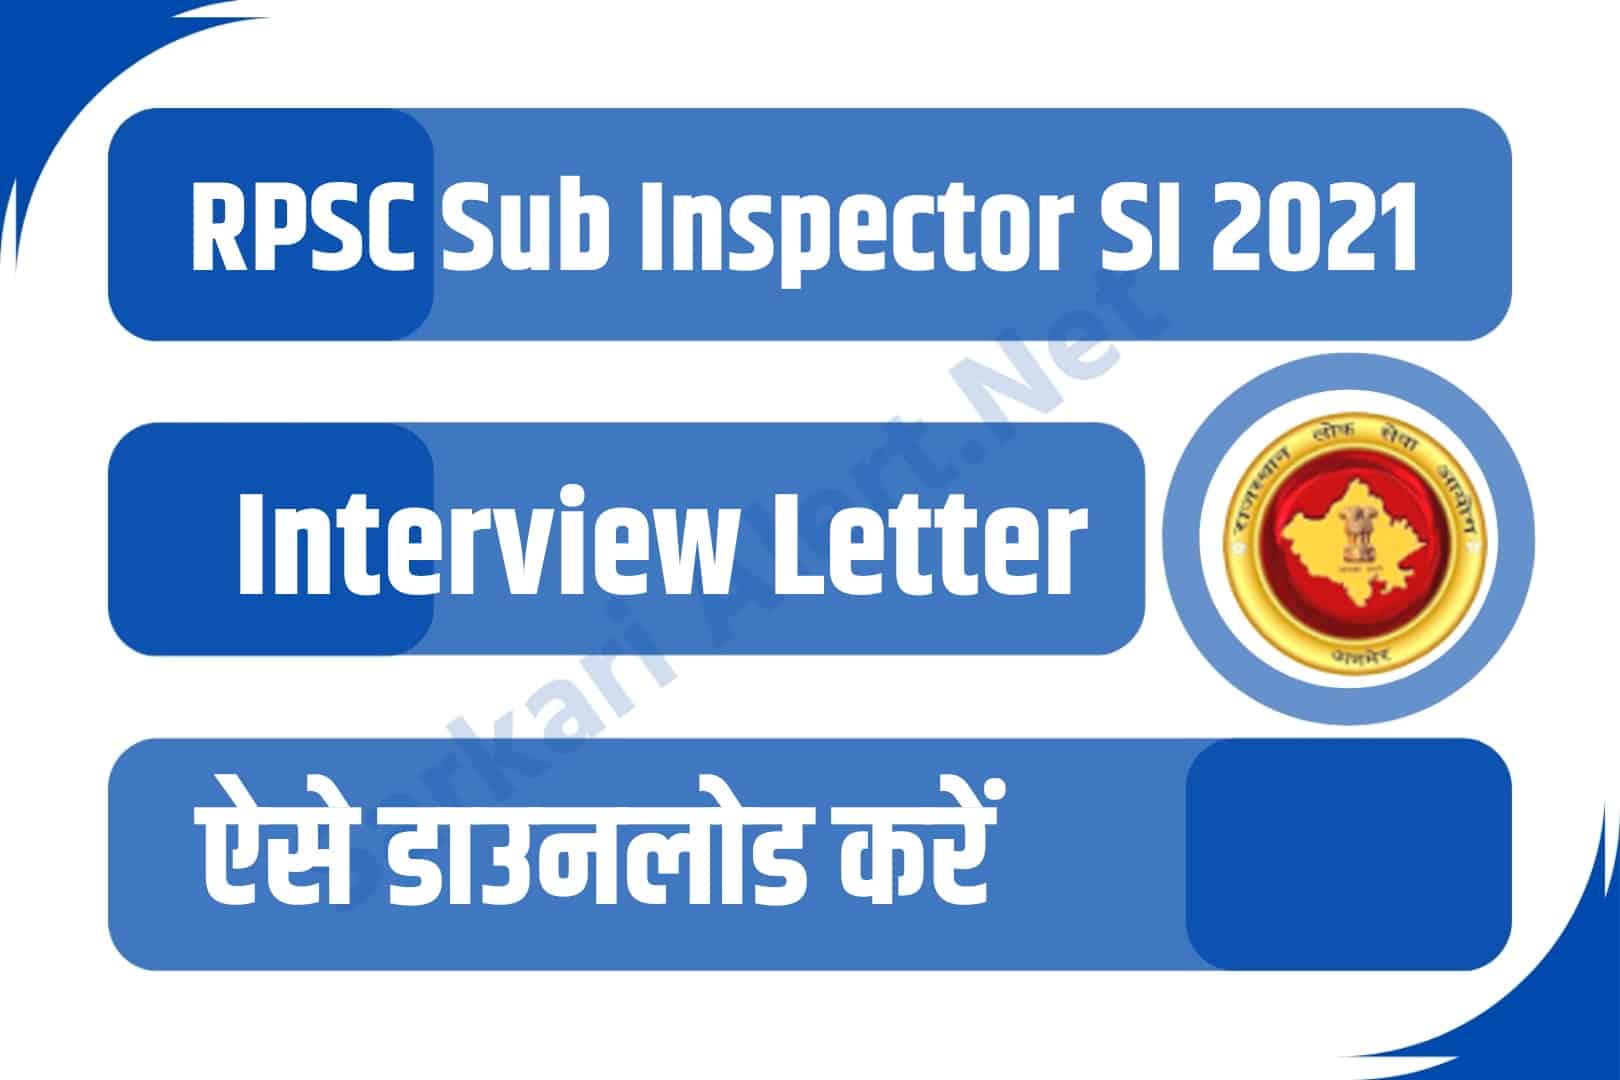 RPSC Sub Inspector SI 2021 Interview Letter | आरपीएससी सब इंस्पेक्टर इंटरव्यू लेटर